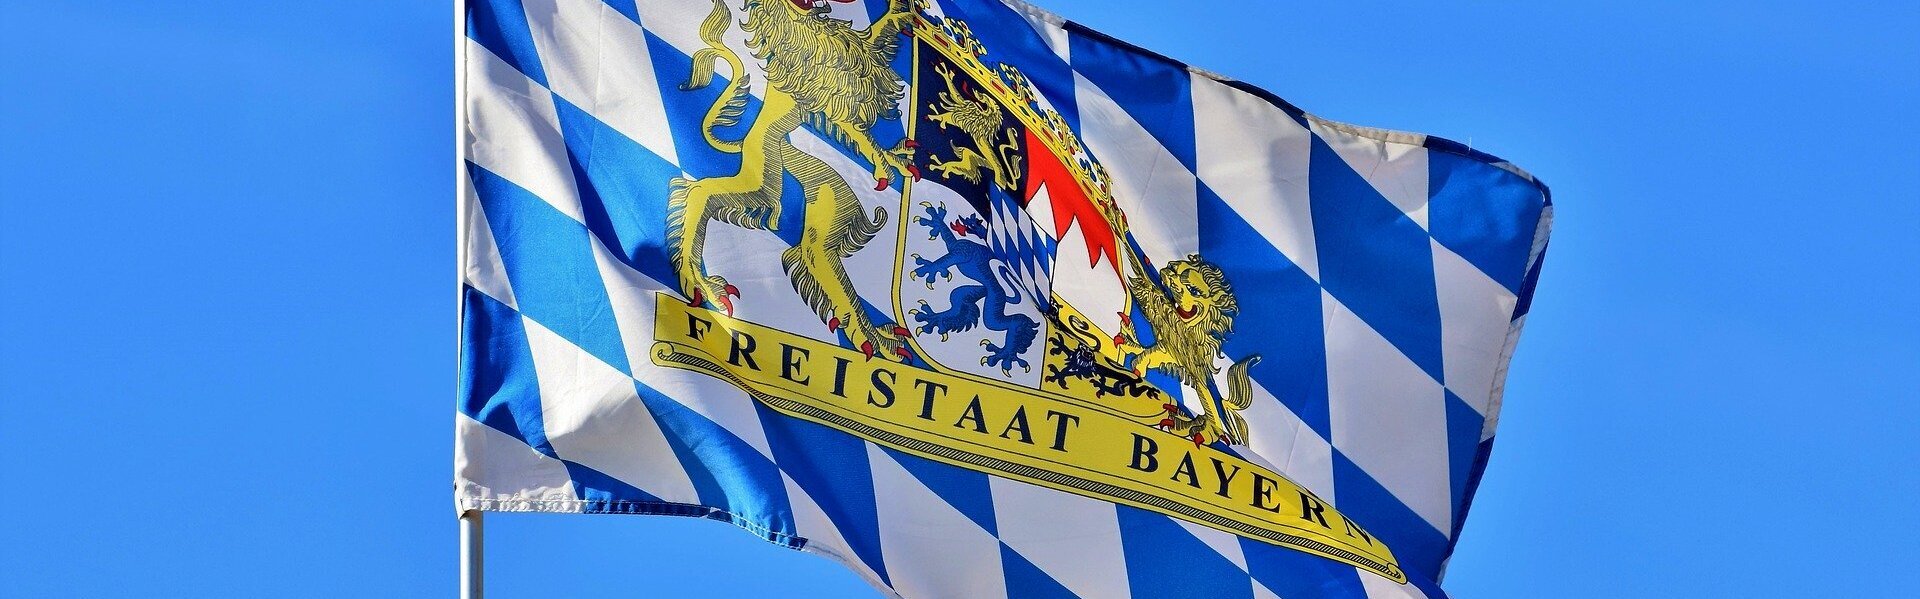 DAs Bild zeigt die Bayernflagge